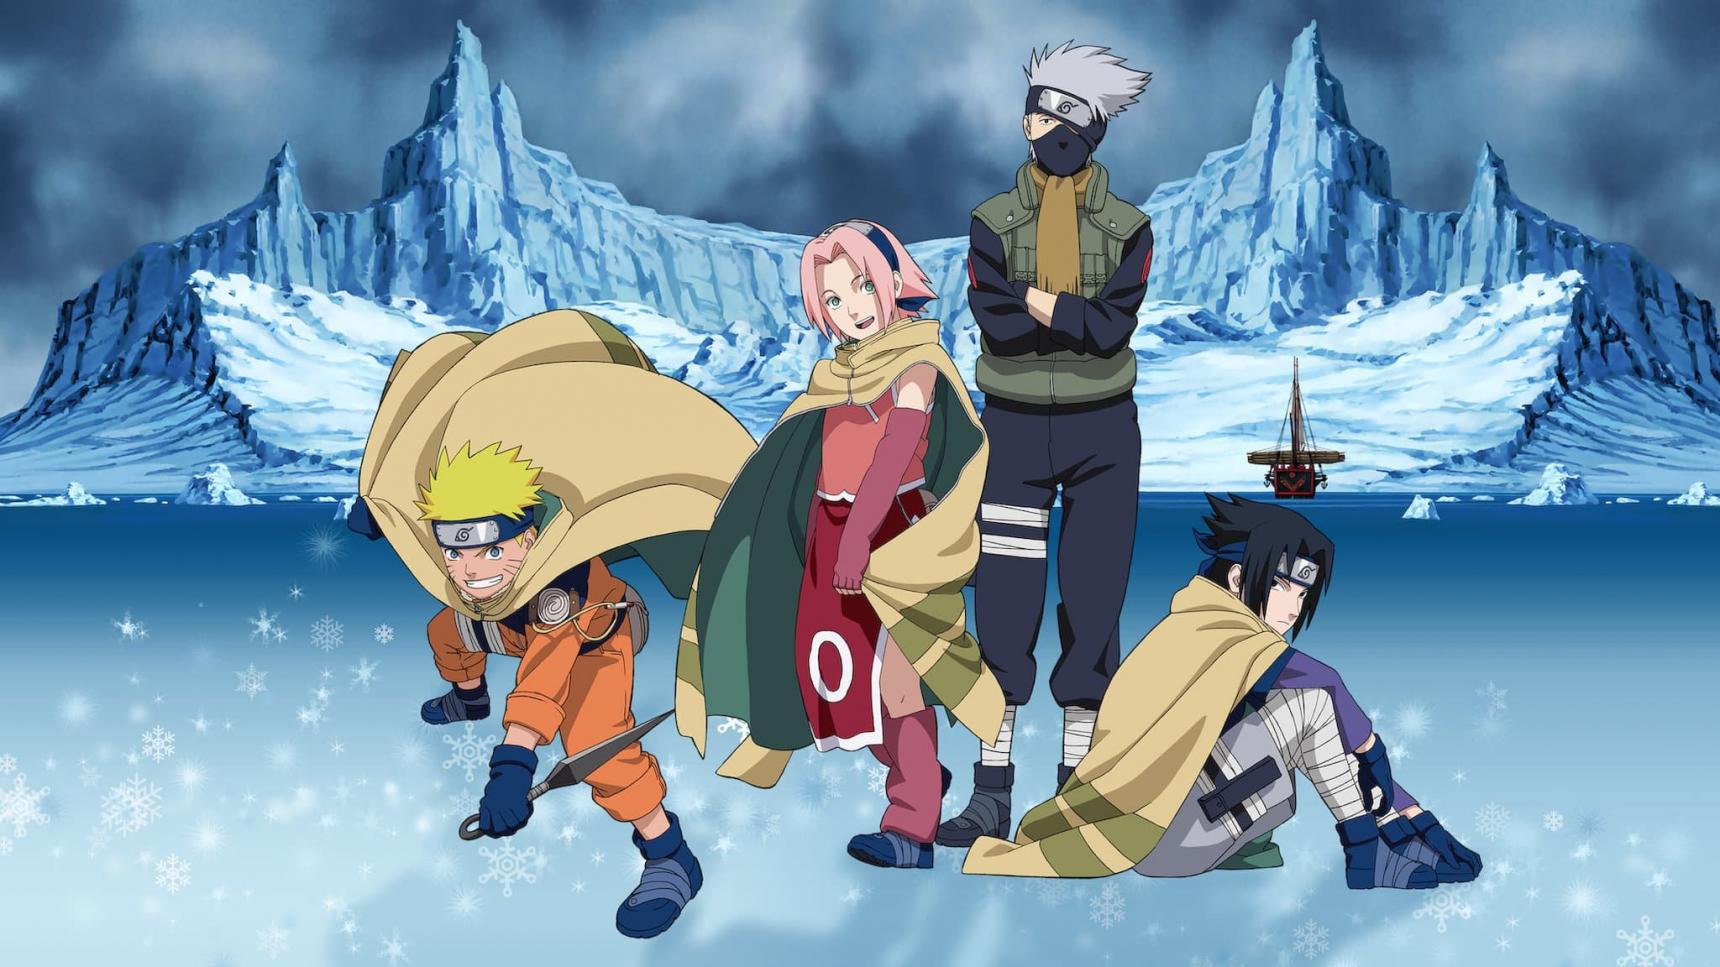 poster de Naruto 1: ¡La Gran misión! ¡El rescate de la Princesa de la Nieve!